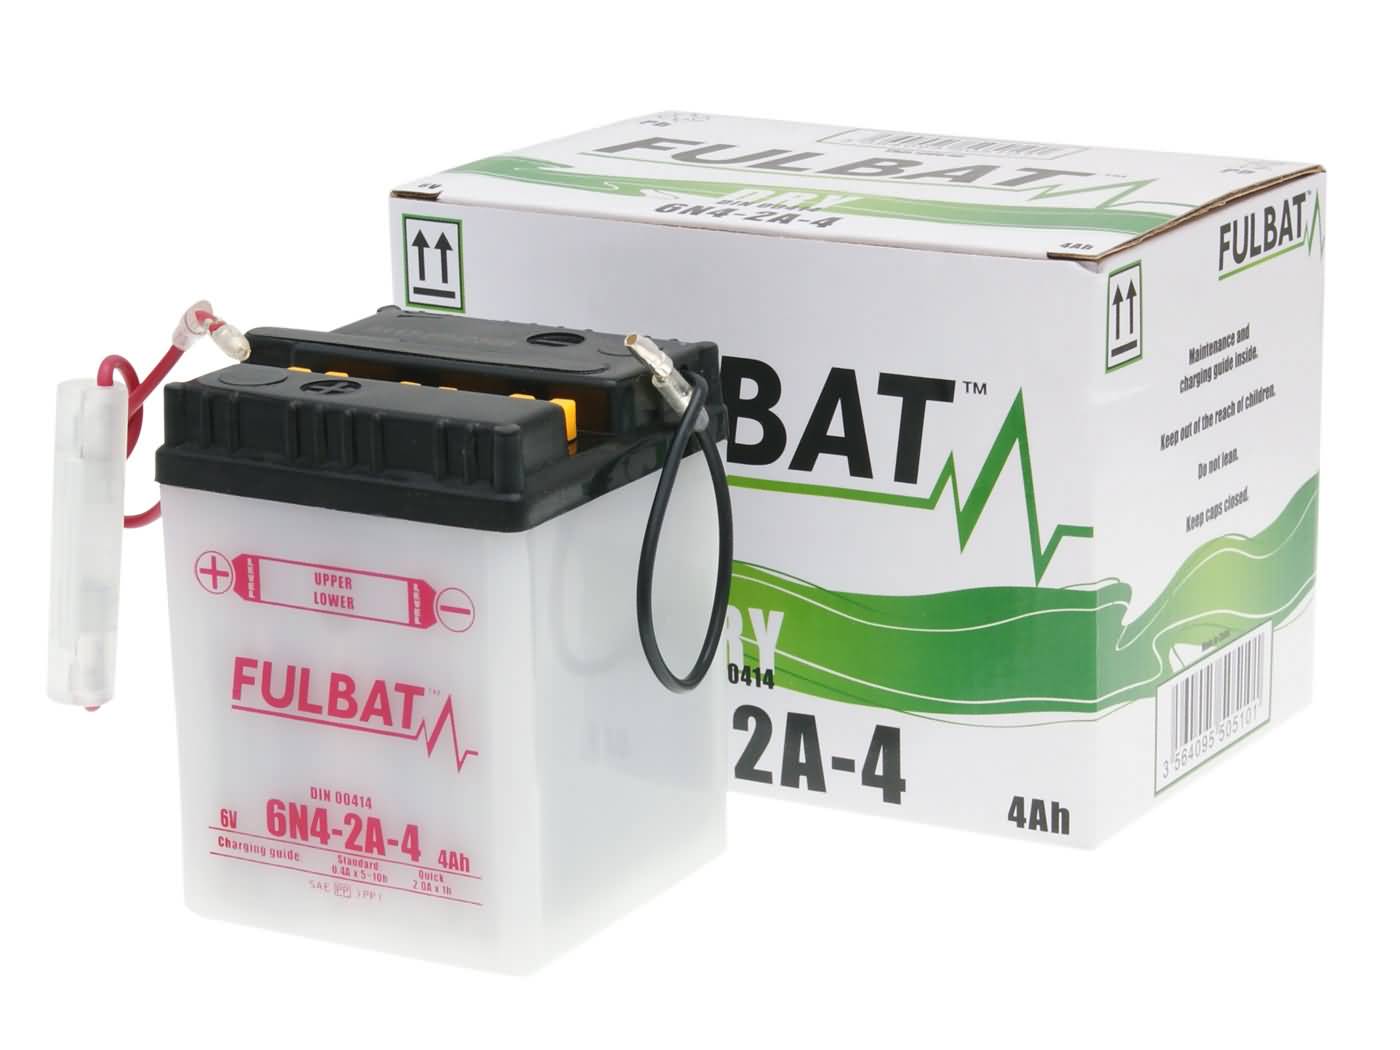 Fulbat 6V 6N4-2A-4 DRY Batterie